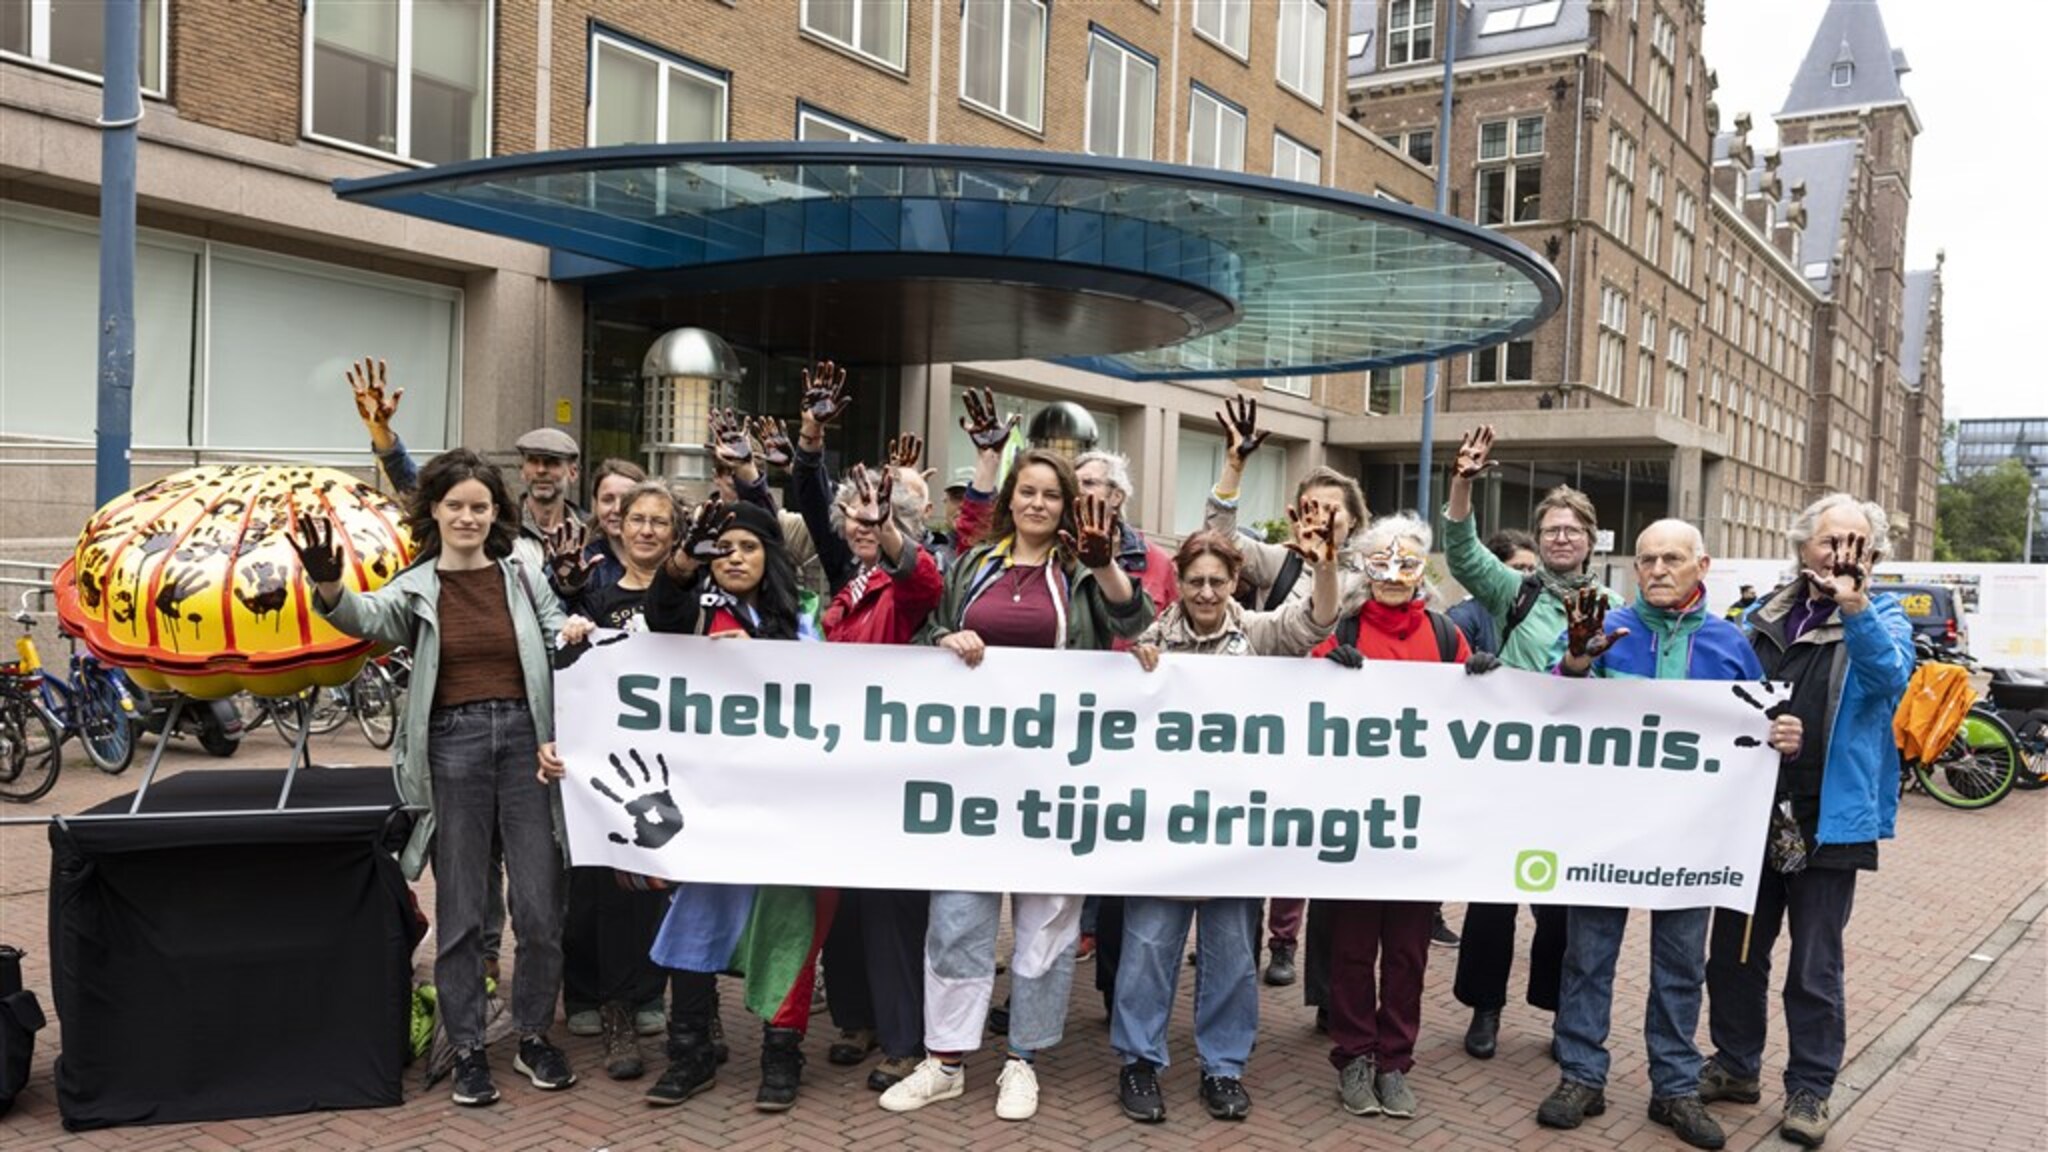 Hoger beroep klimaatzaak tegen Shell 'wereldwijd uniek' | RTL Nieuws - RTL.nl